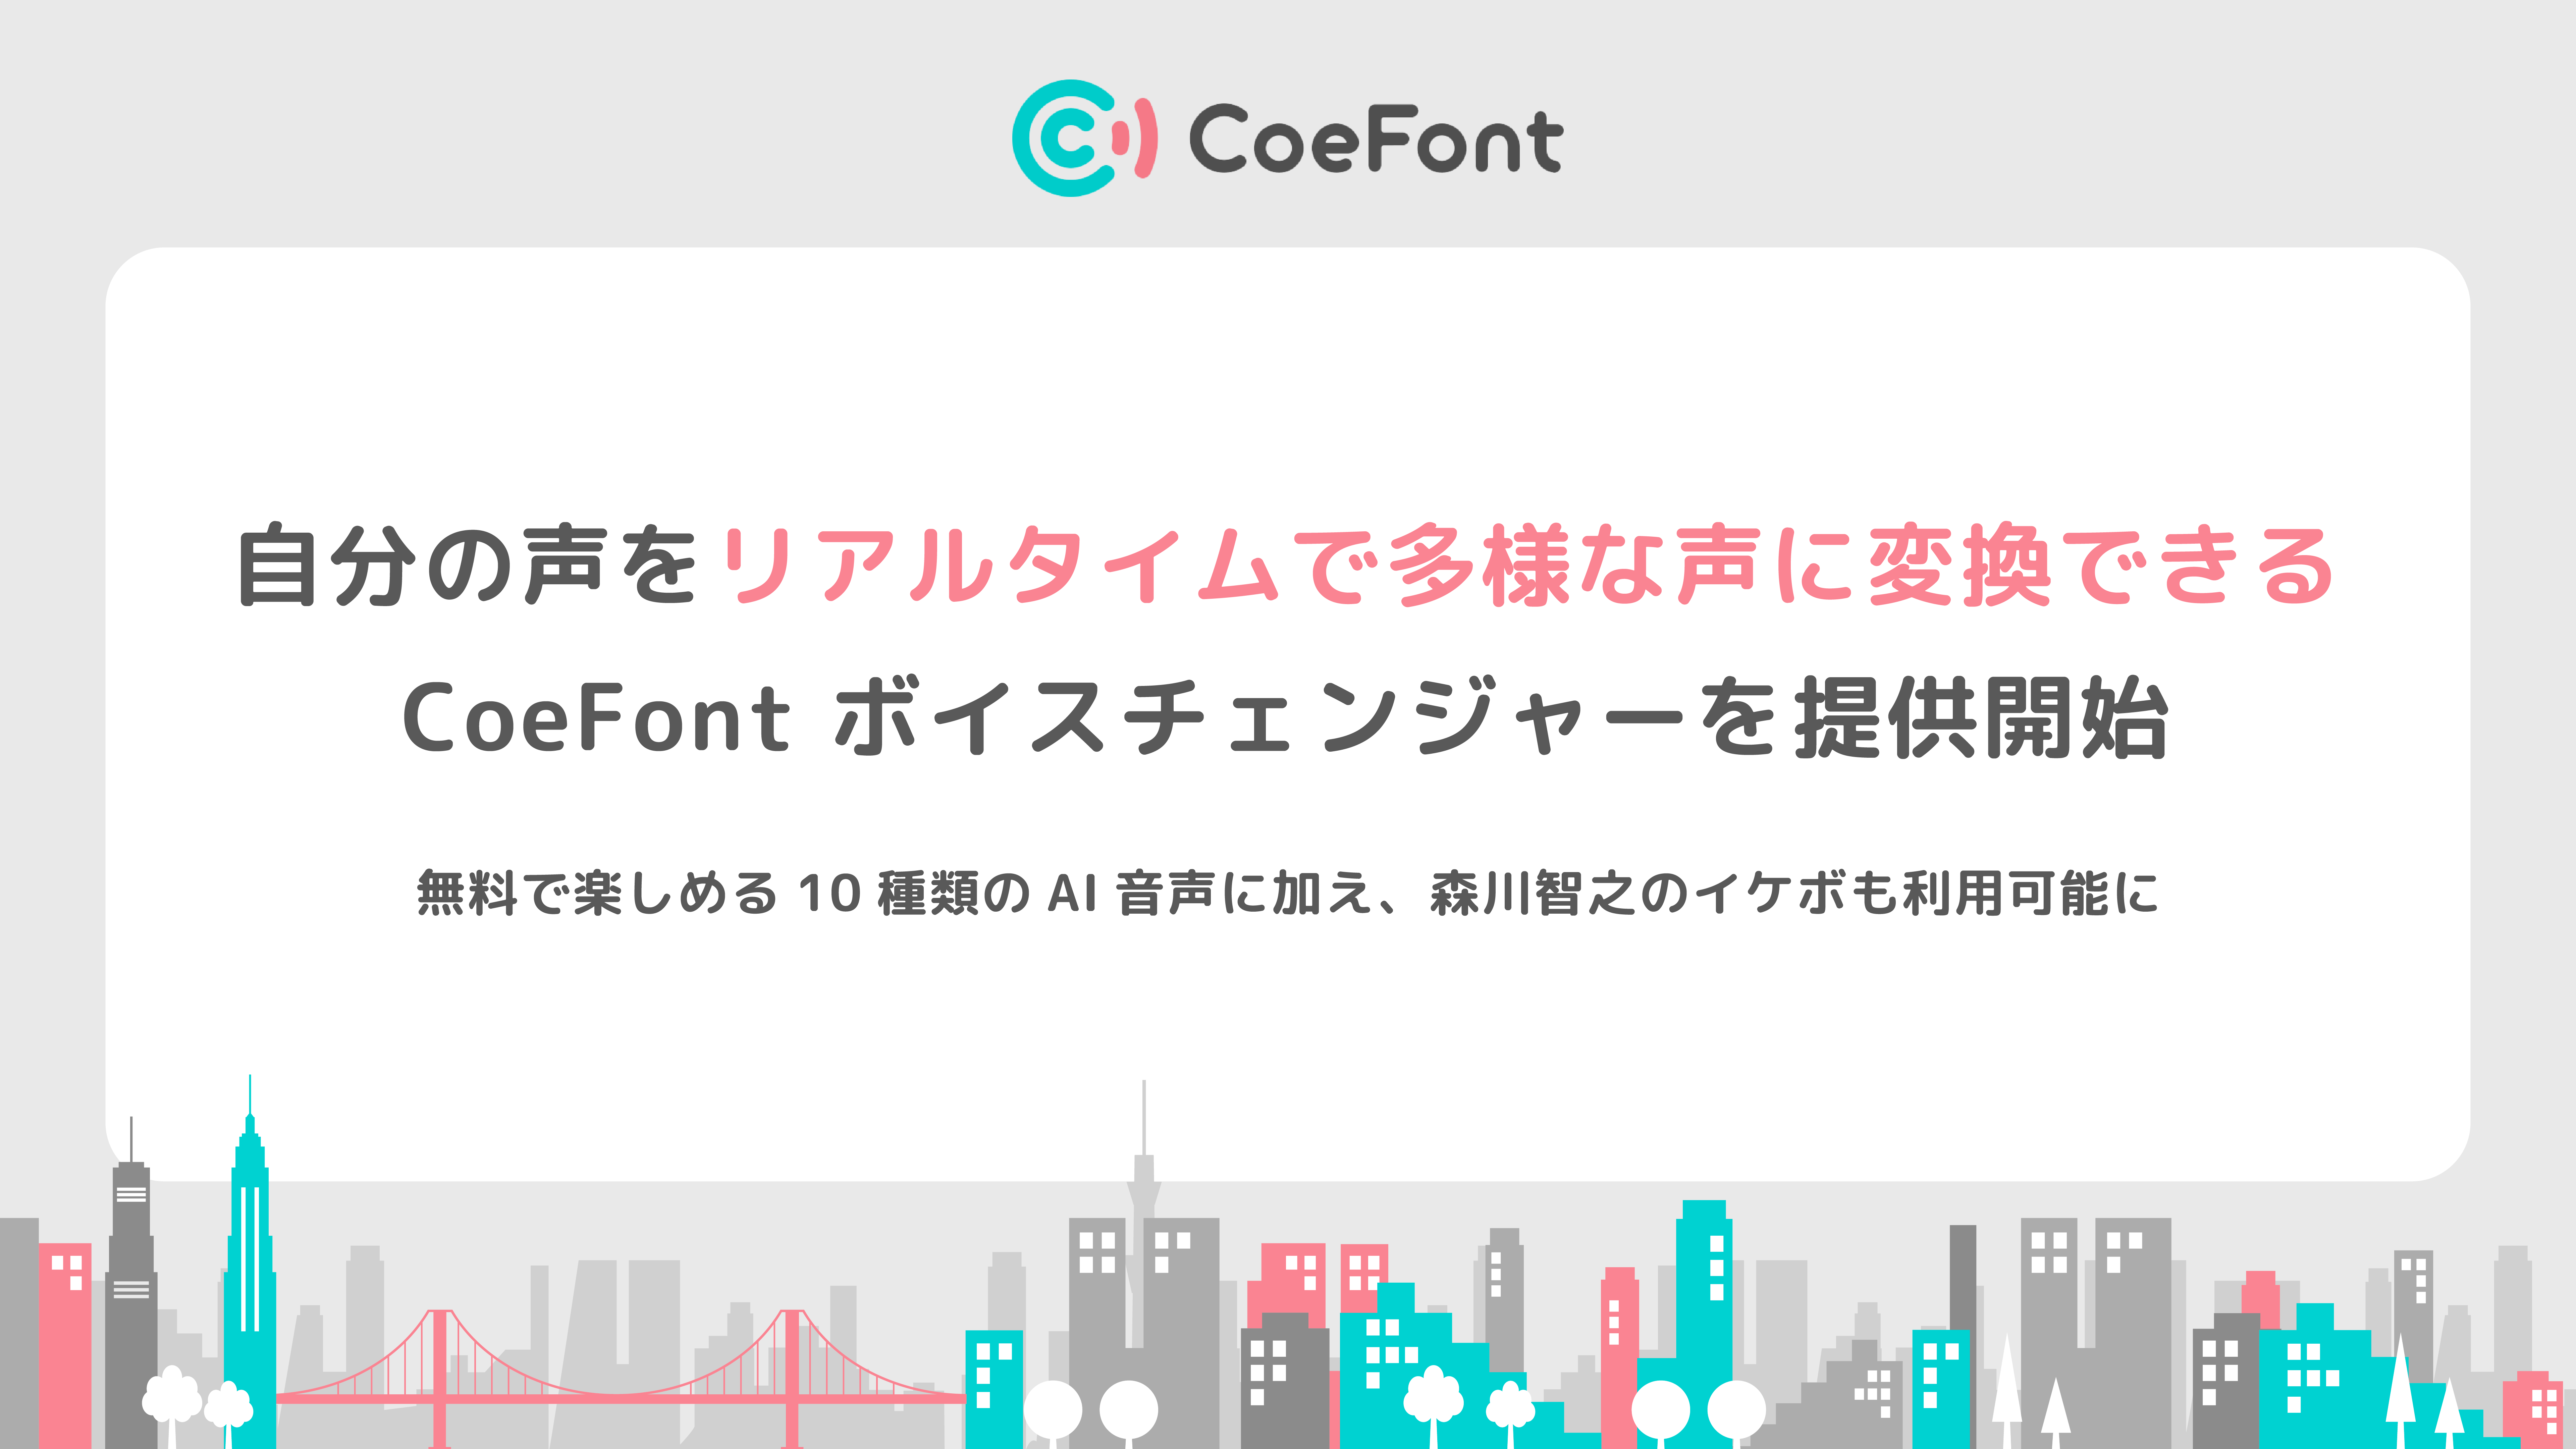 CoeFont、自分の声をリアルタイムで多様なAI音声に変換できる「CoeFont ボイスチェンジャー」を提供開始